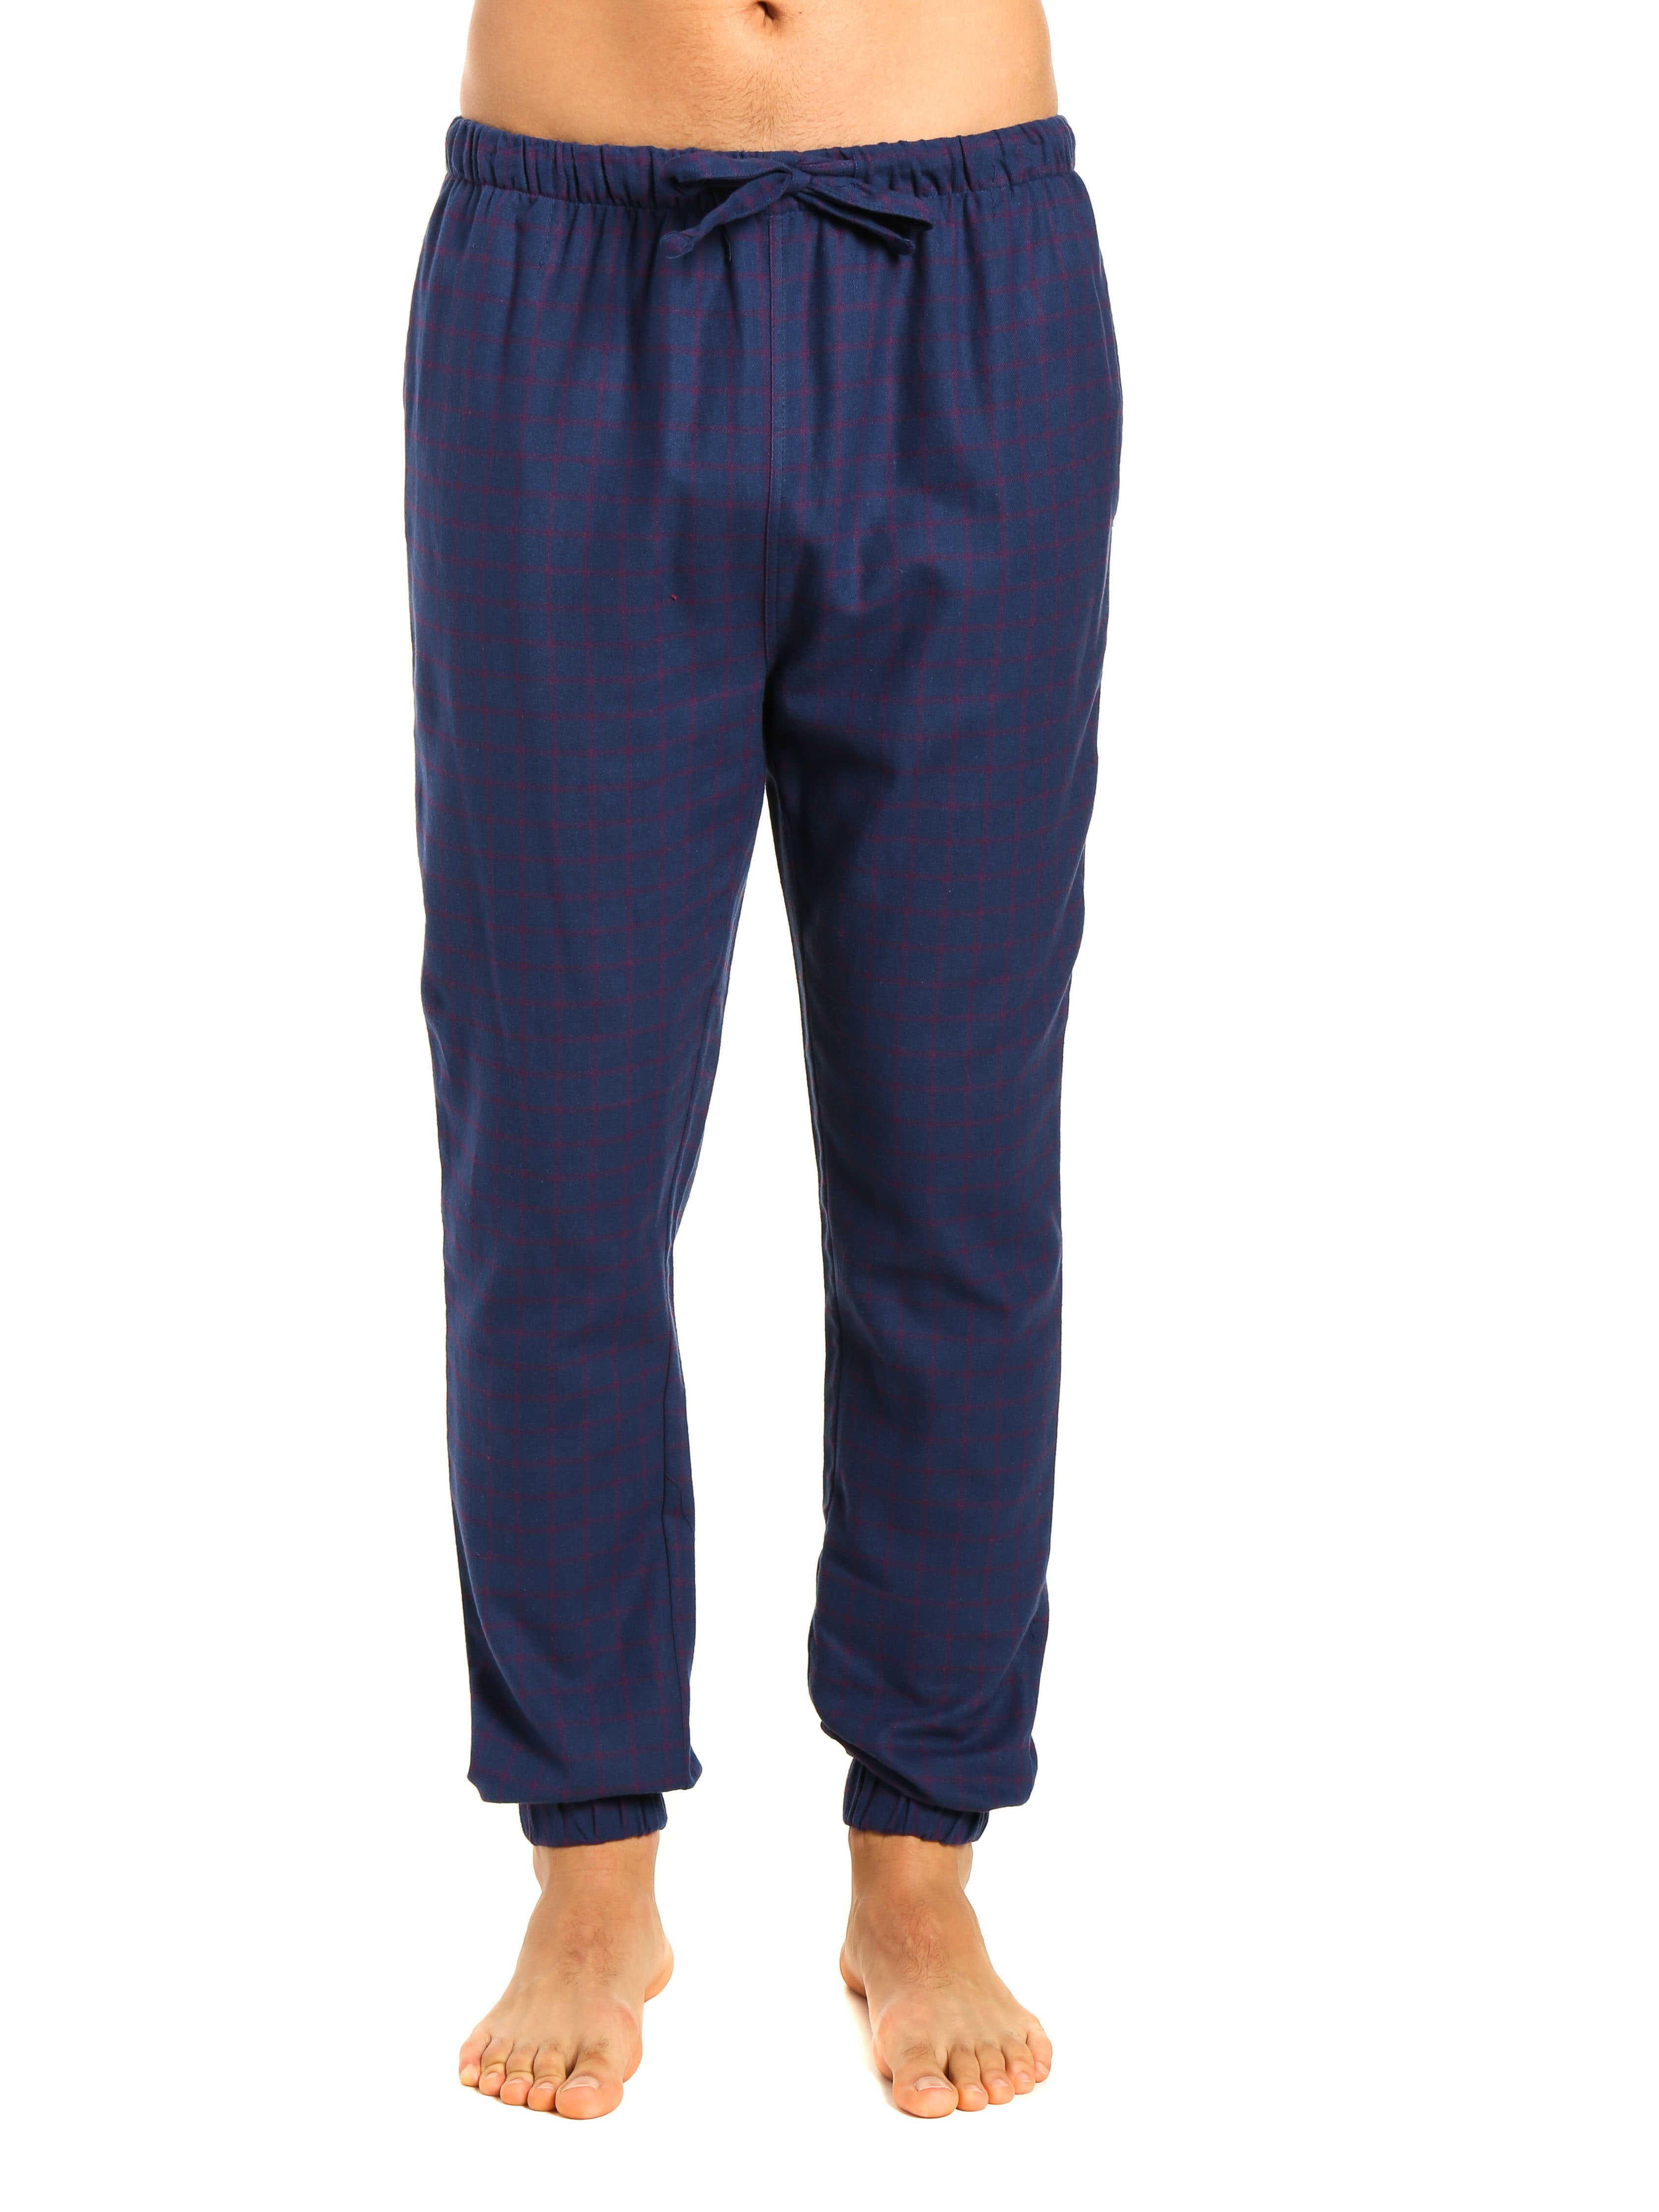 Noble Mount Mens 100% Cotton Flannel Jogger Lounge Pants - Walmart.com